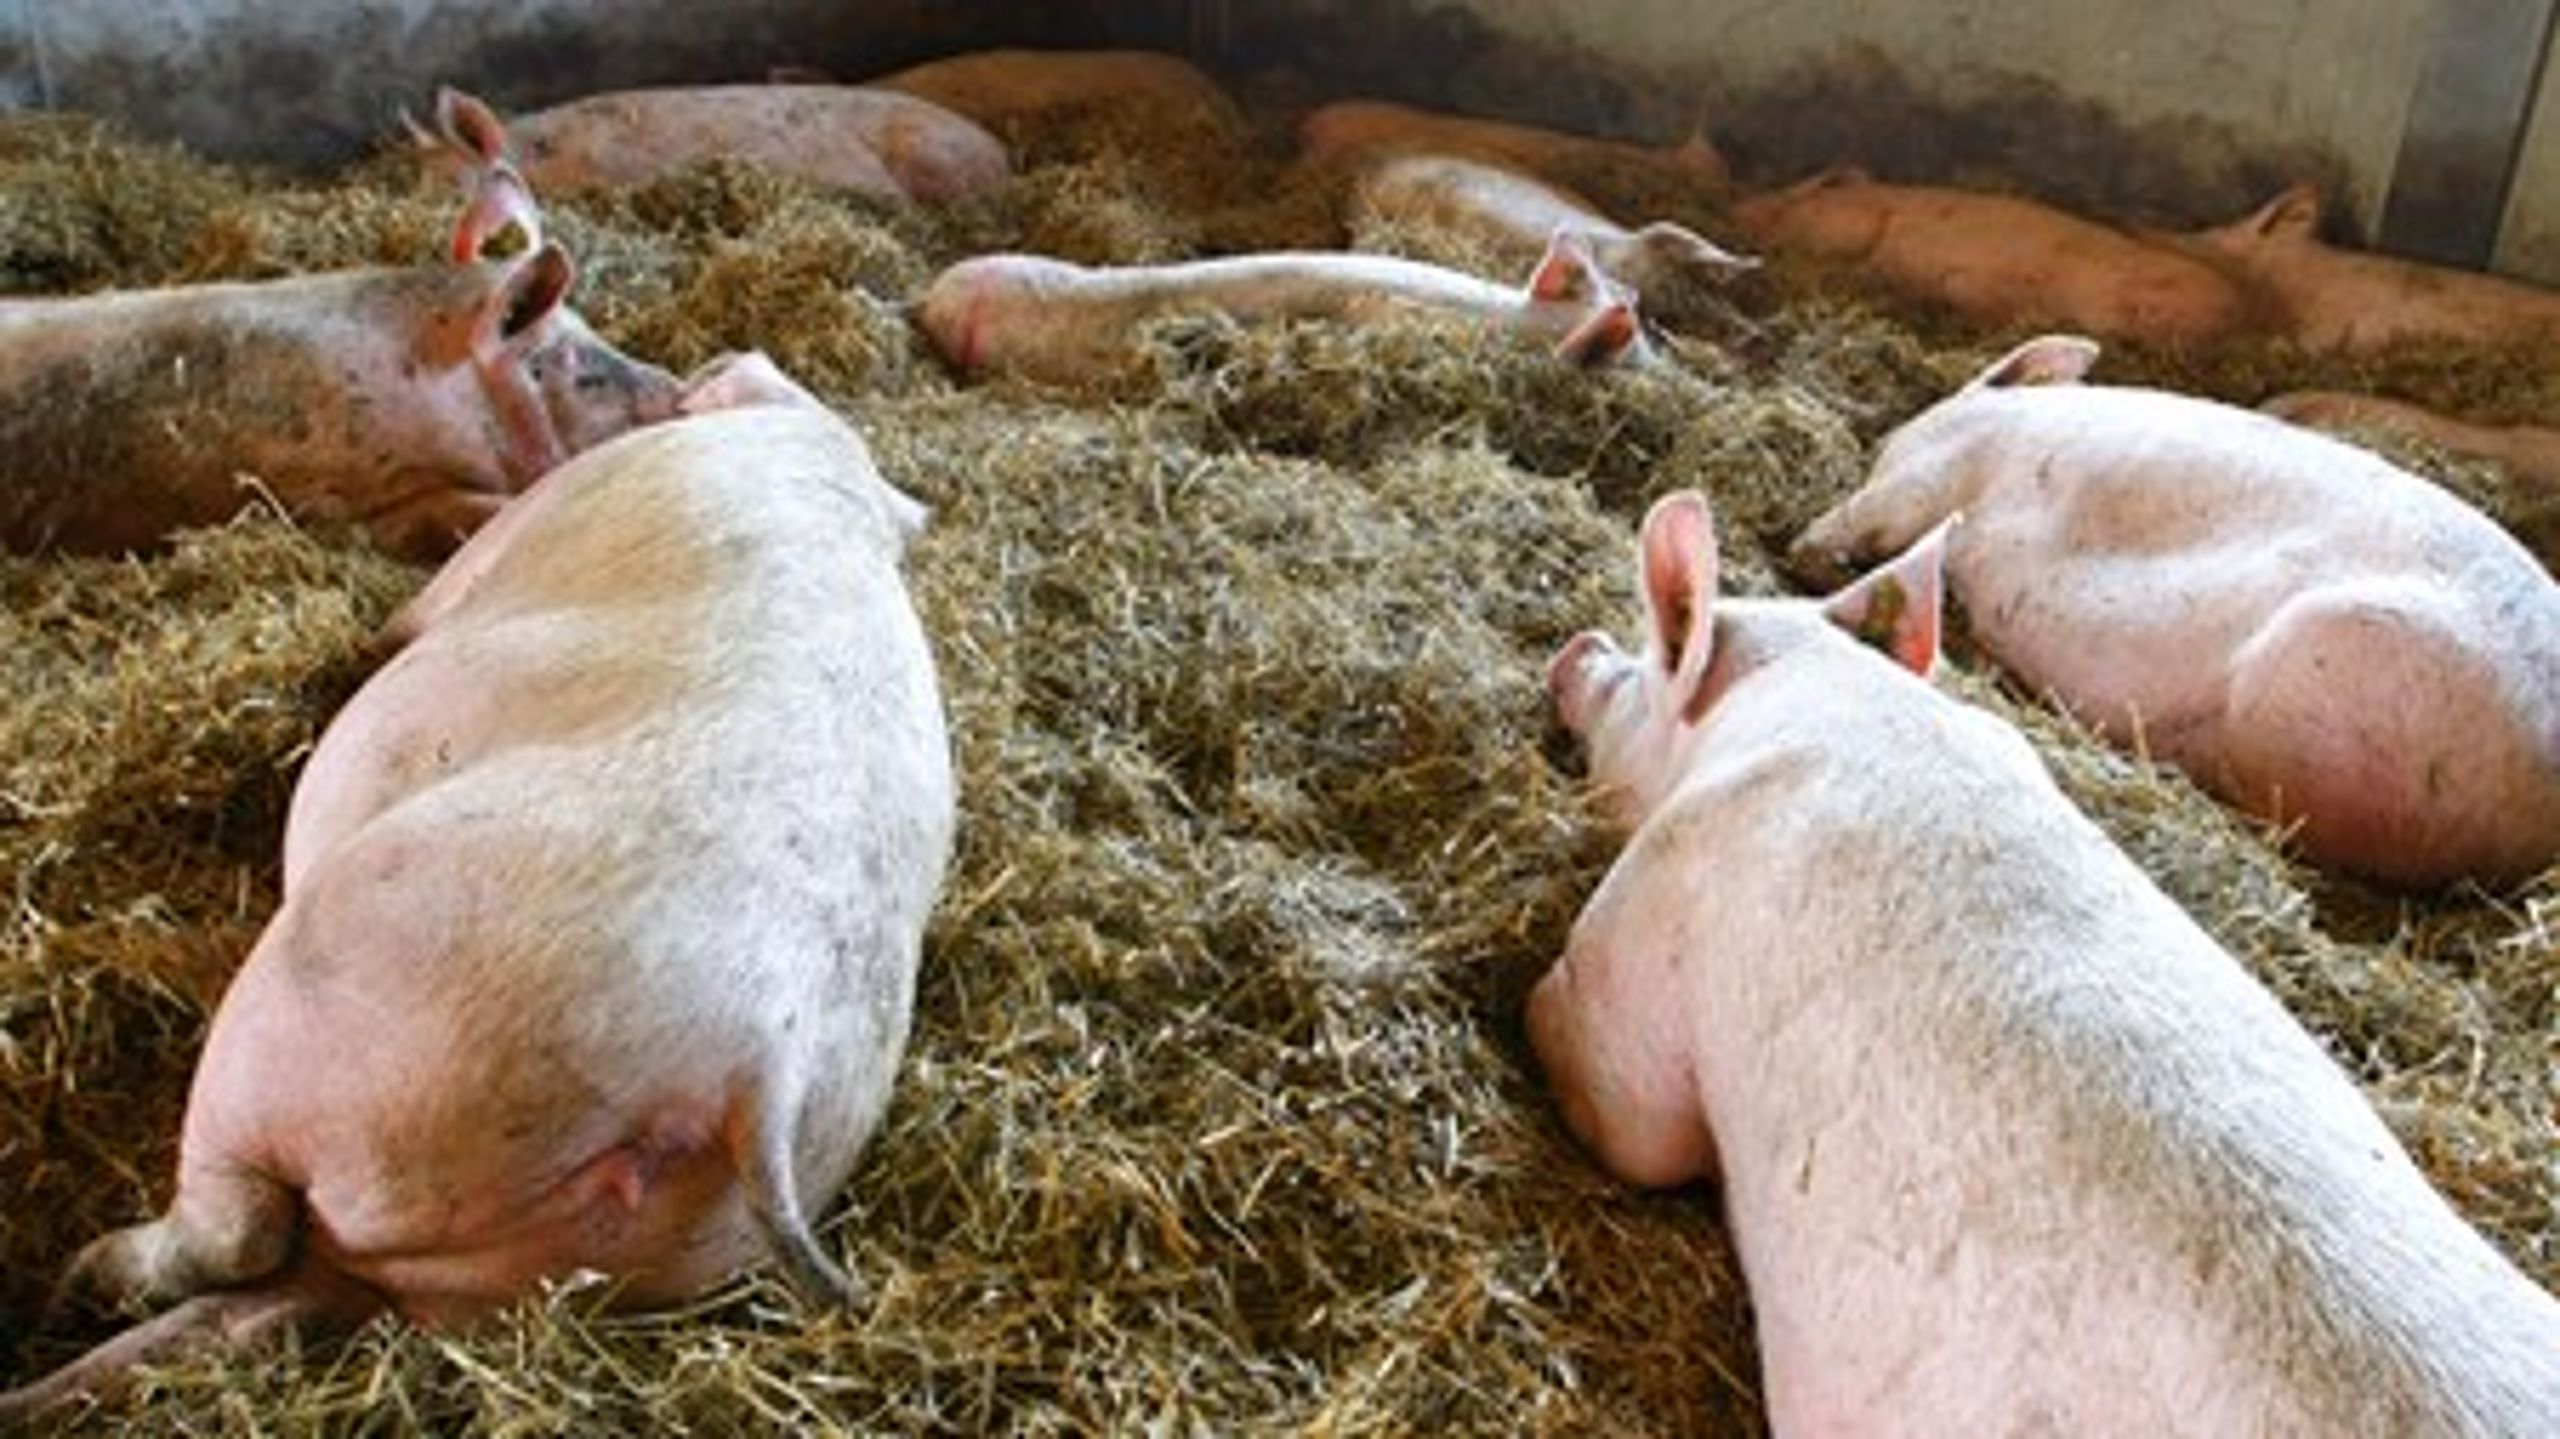 Videncenter for Svineproduktion (VSP) vil halvere brugen af antibiotika inden 2016.